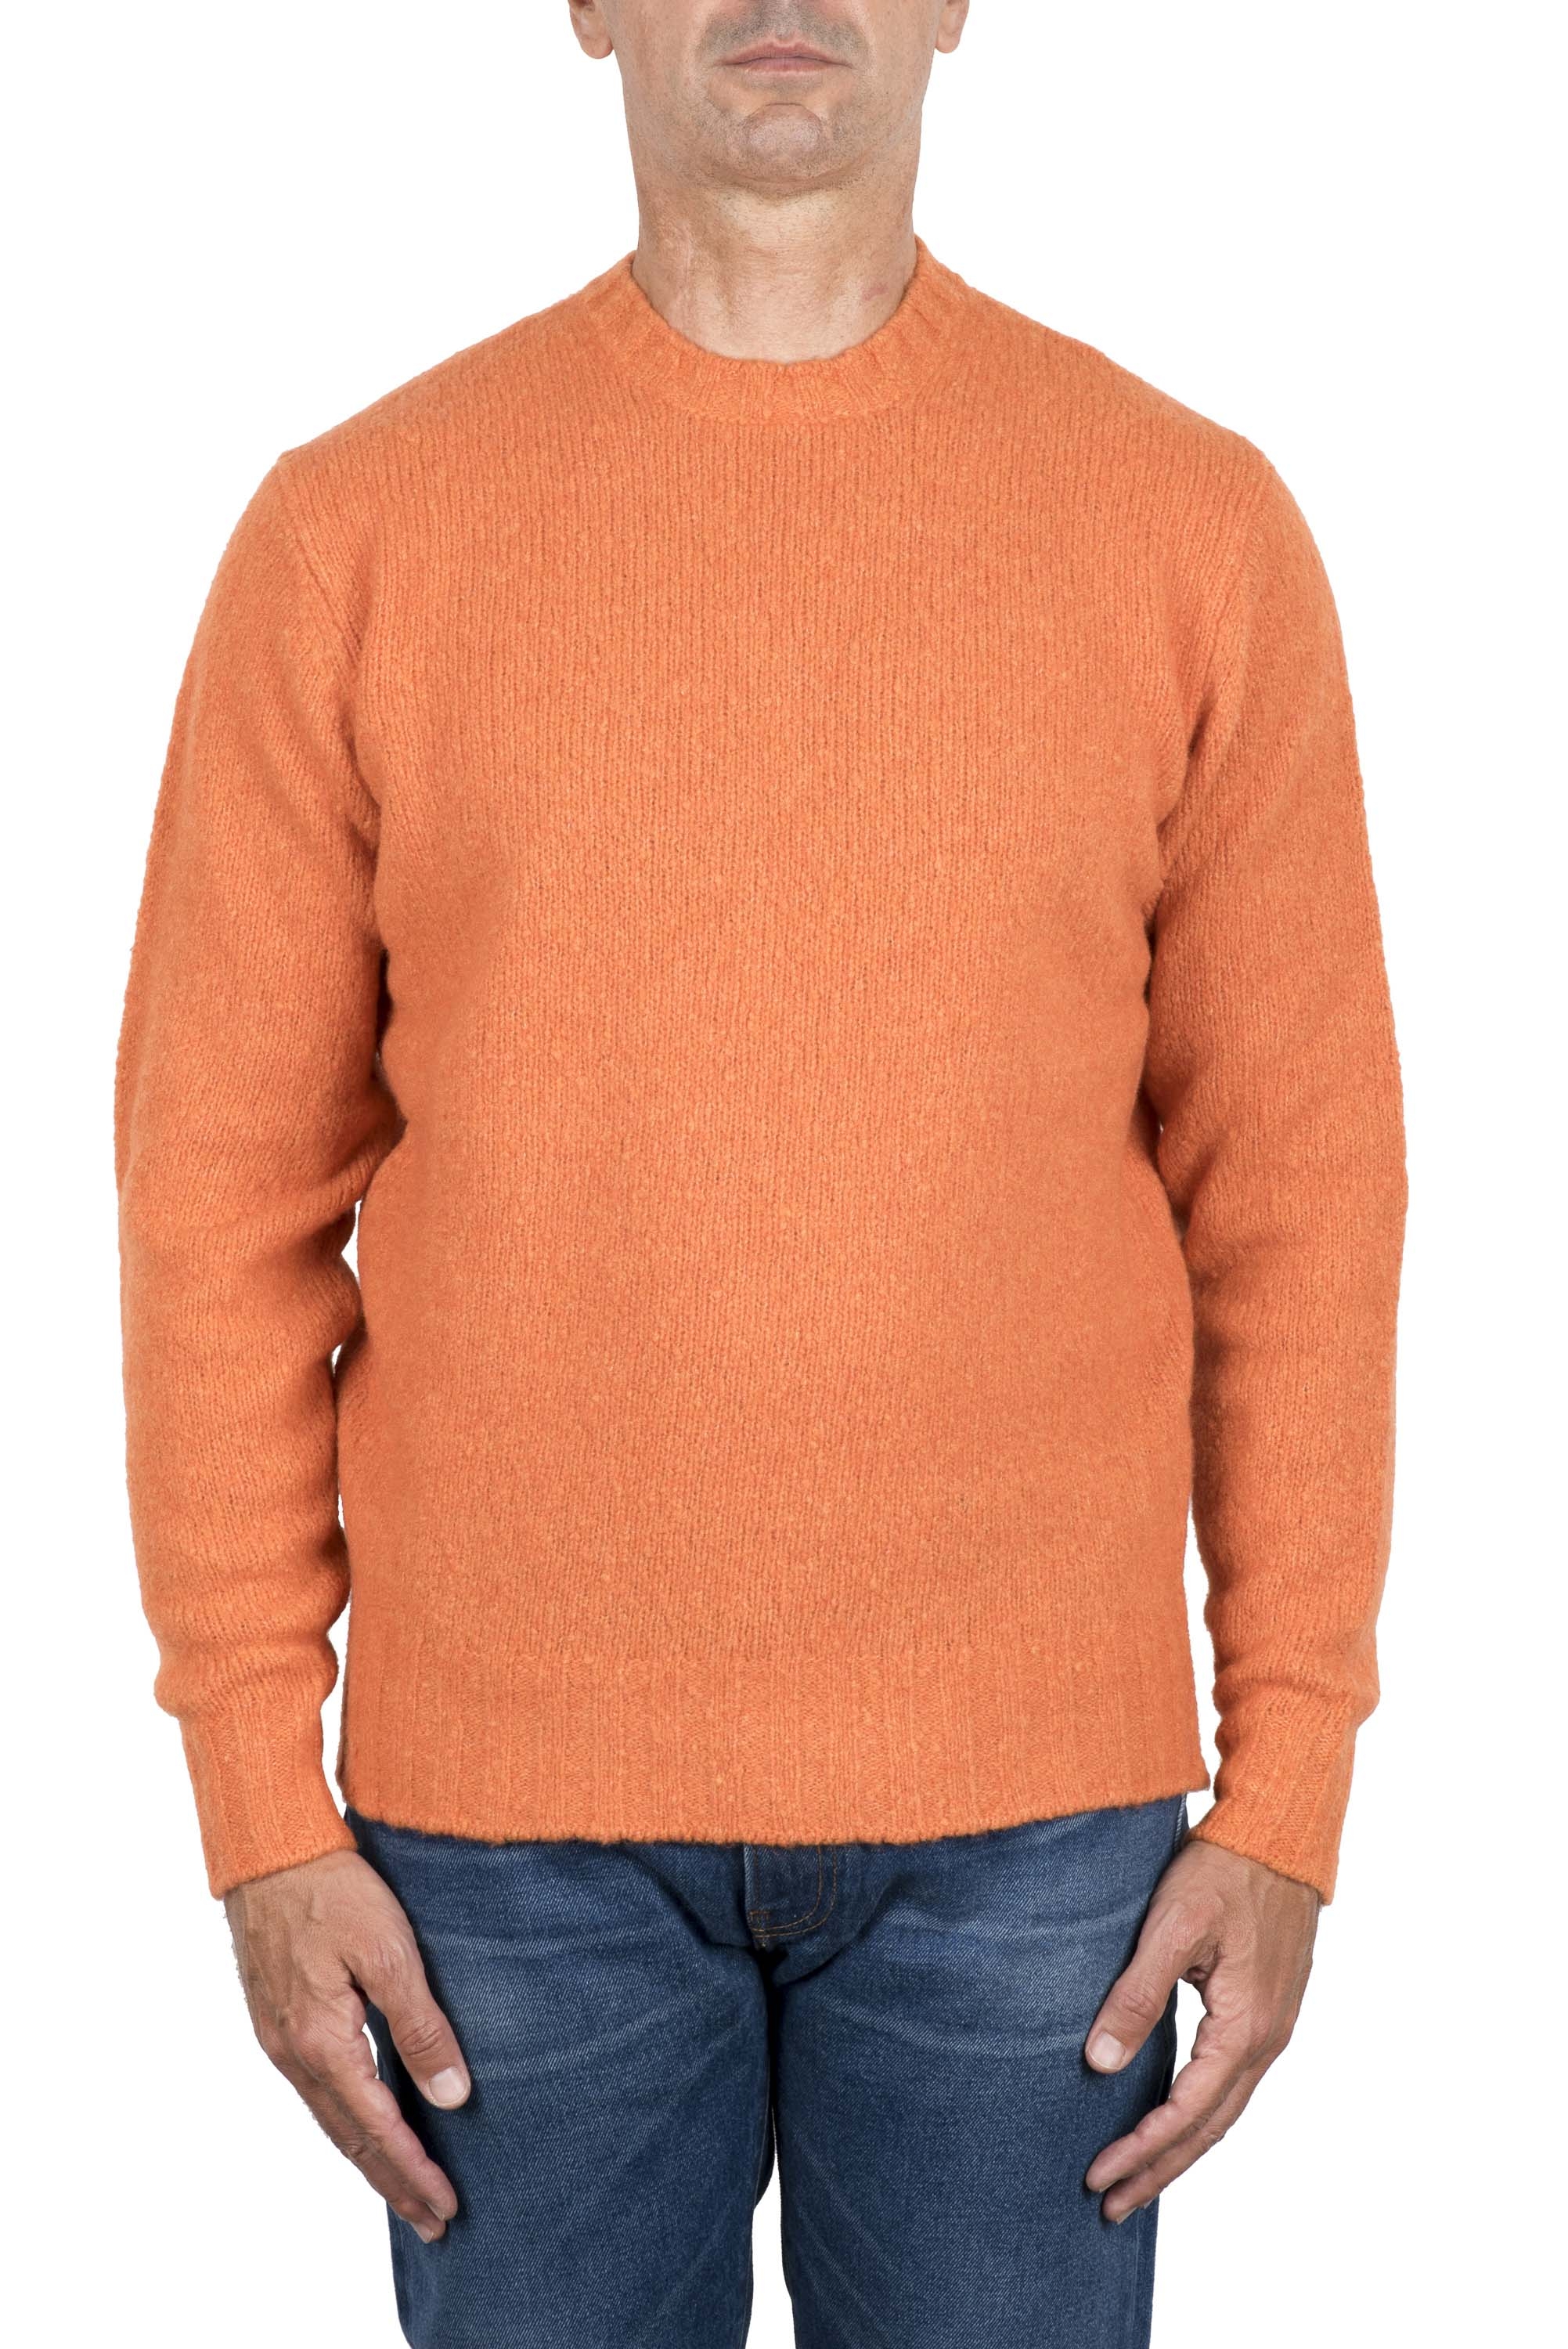 SBU 04701_23AW Maglia girocollo in lana misto cashmere arancione 01